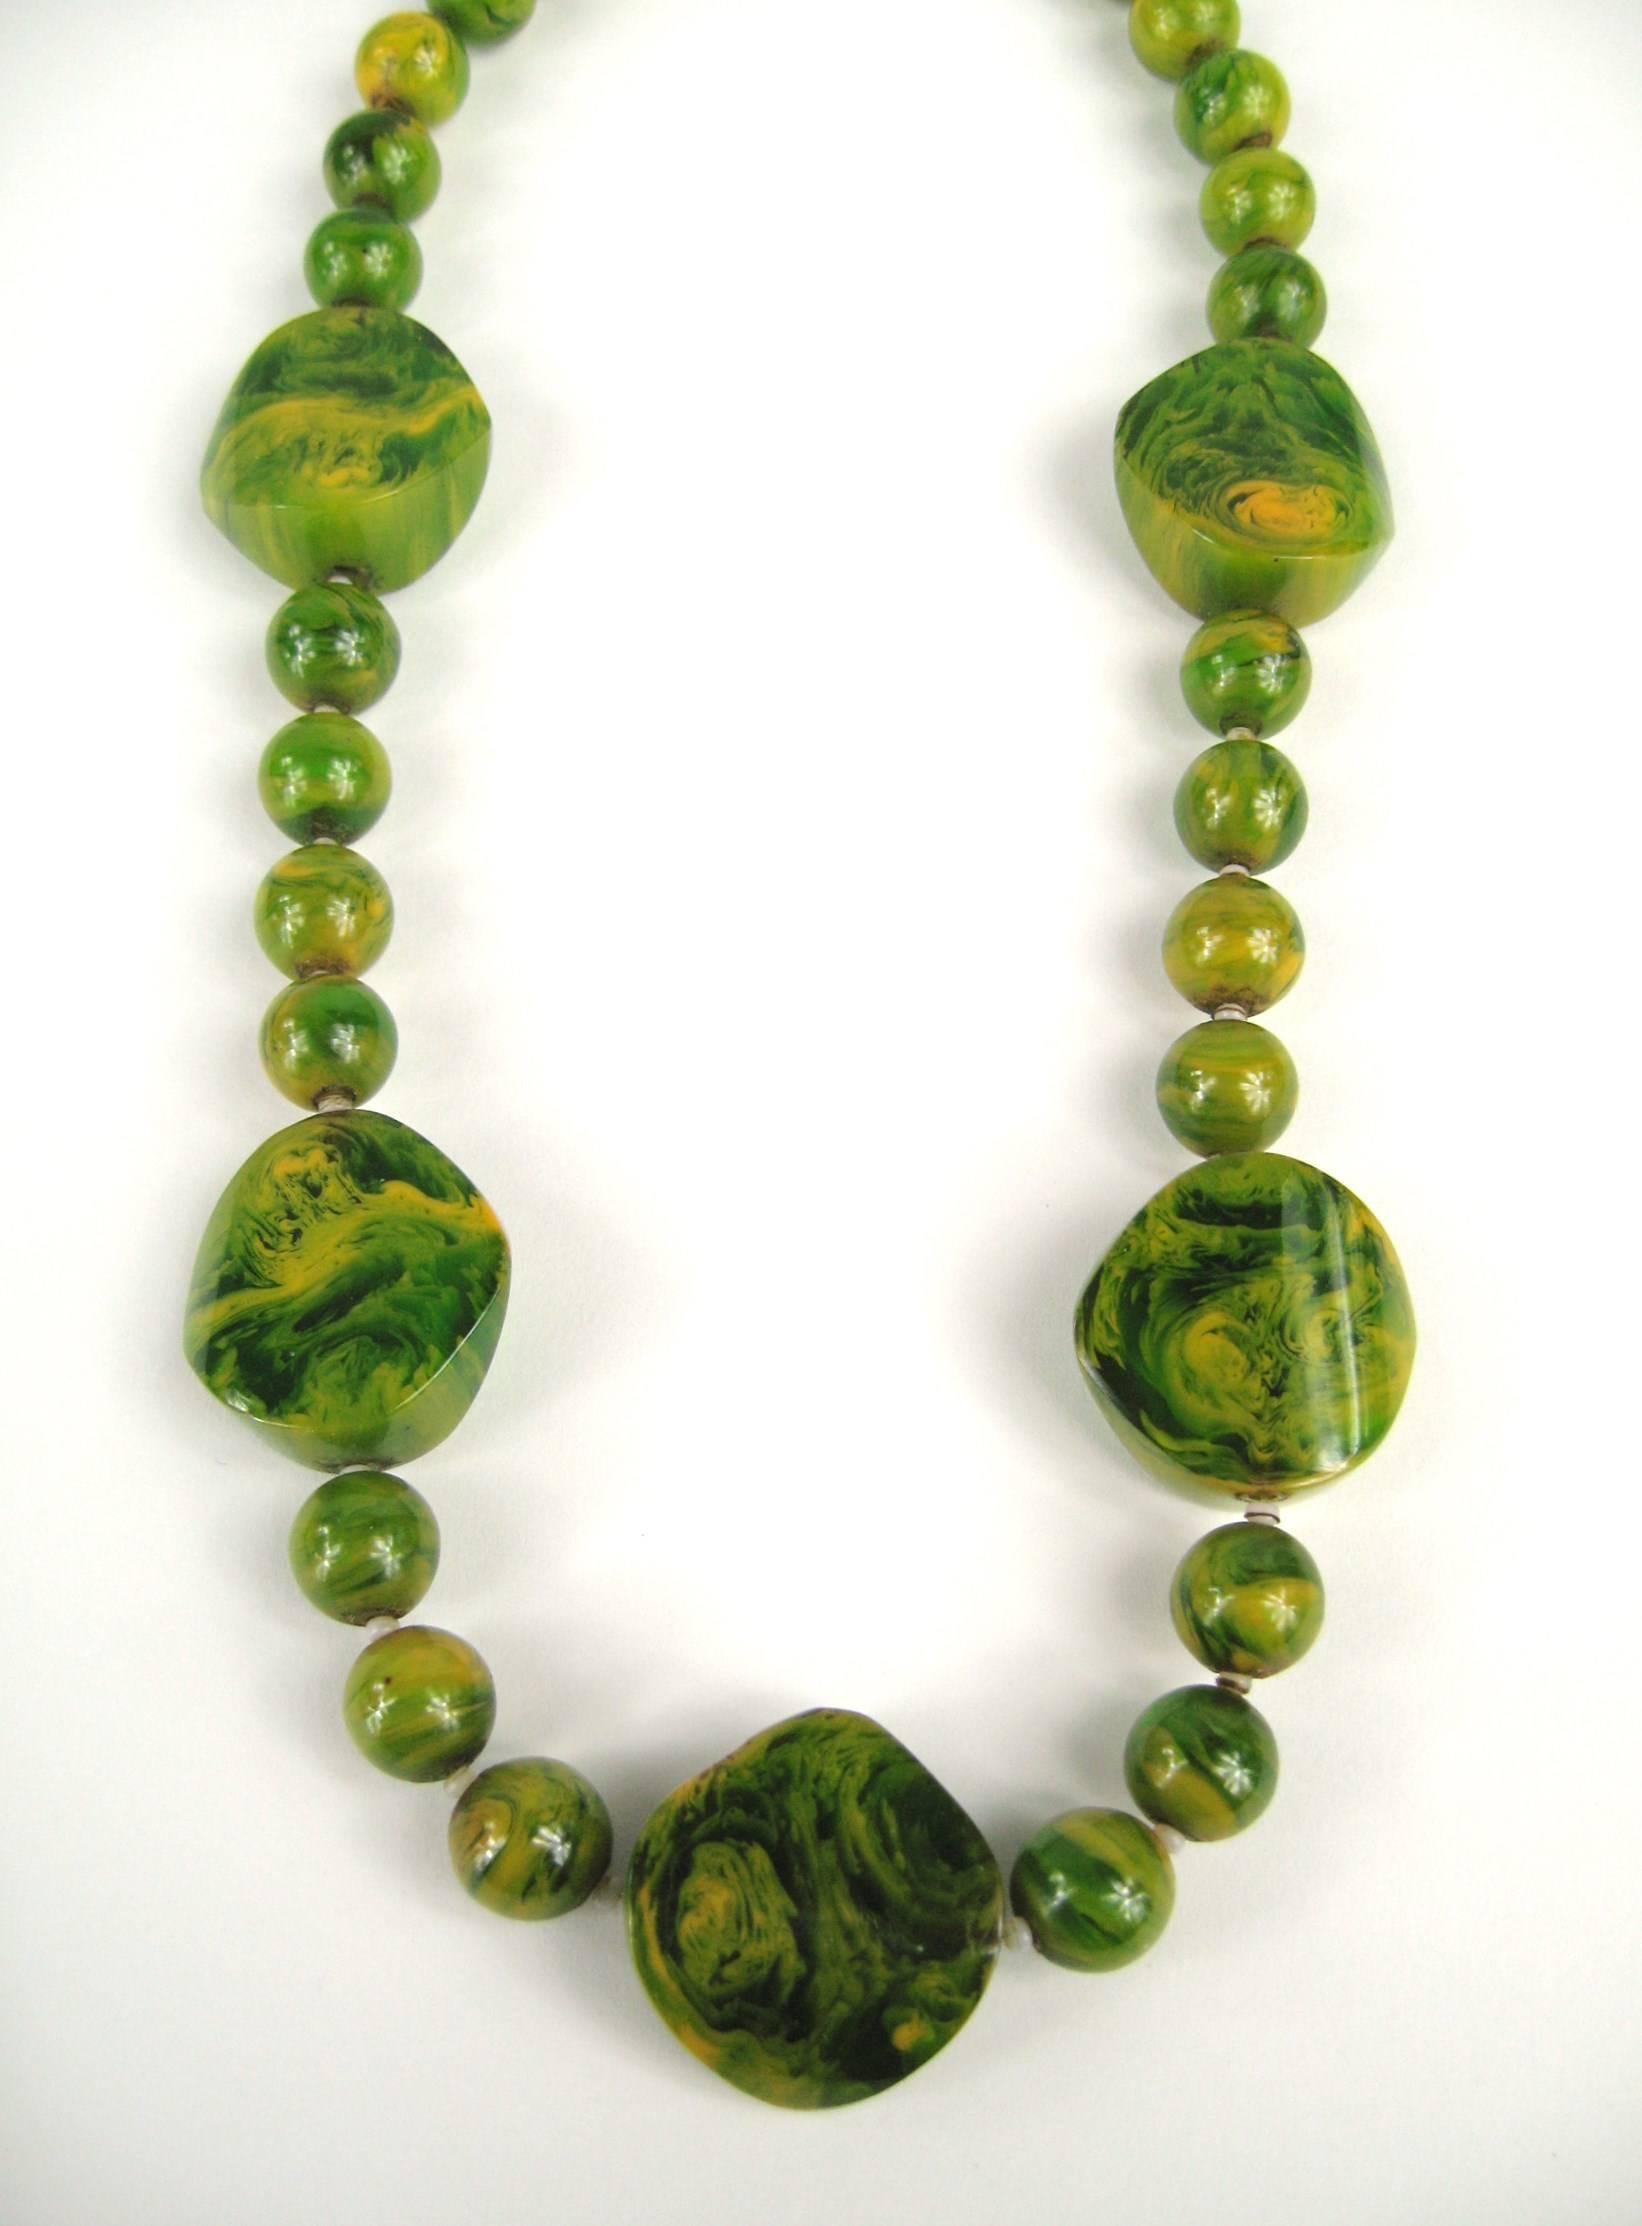 Vintage Grün Bakelit / Catalin Halskette.abgestuften runden Perlen zusammen mit größeren Akzent Bakelit Perle. Perlen 10,86 mm bis 10,36 mm, große Scheibenperlen sind 24,78 mm x 24,66 mm. Messen 20 Zoll Ende zu Ende mit einem Barrel